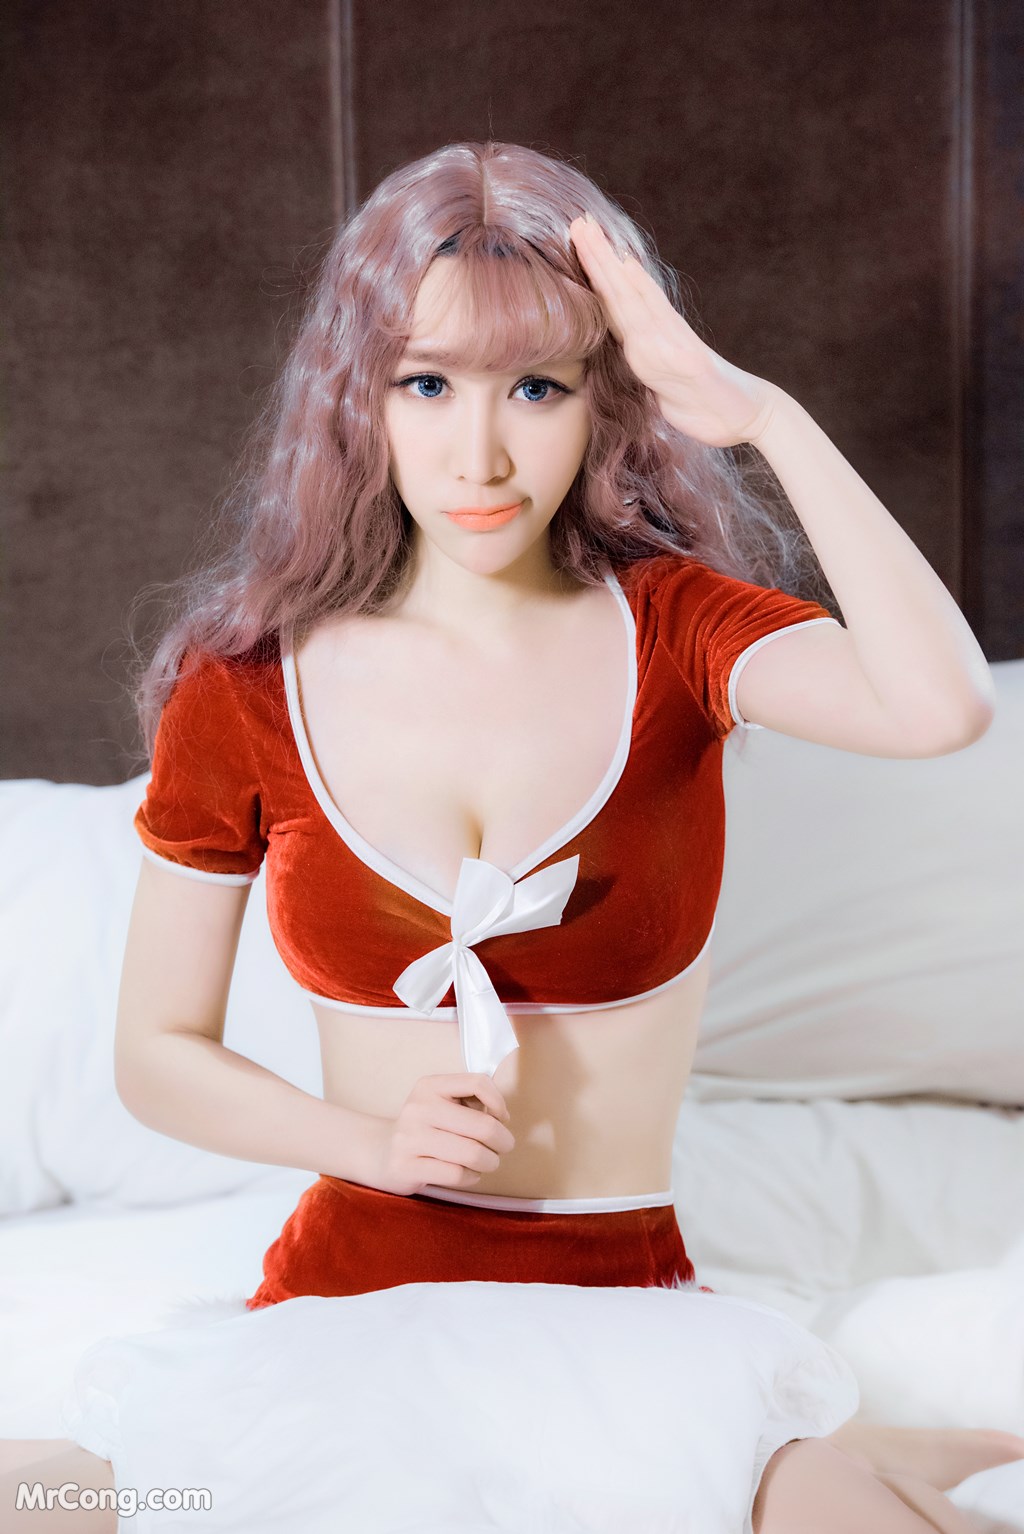 SLADY 2017-05-25 No.005: Model Mei Xin (美 昕) (51 photos) photo 1-0